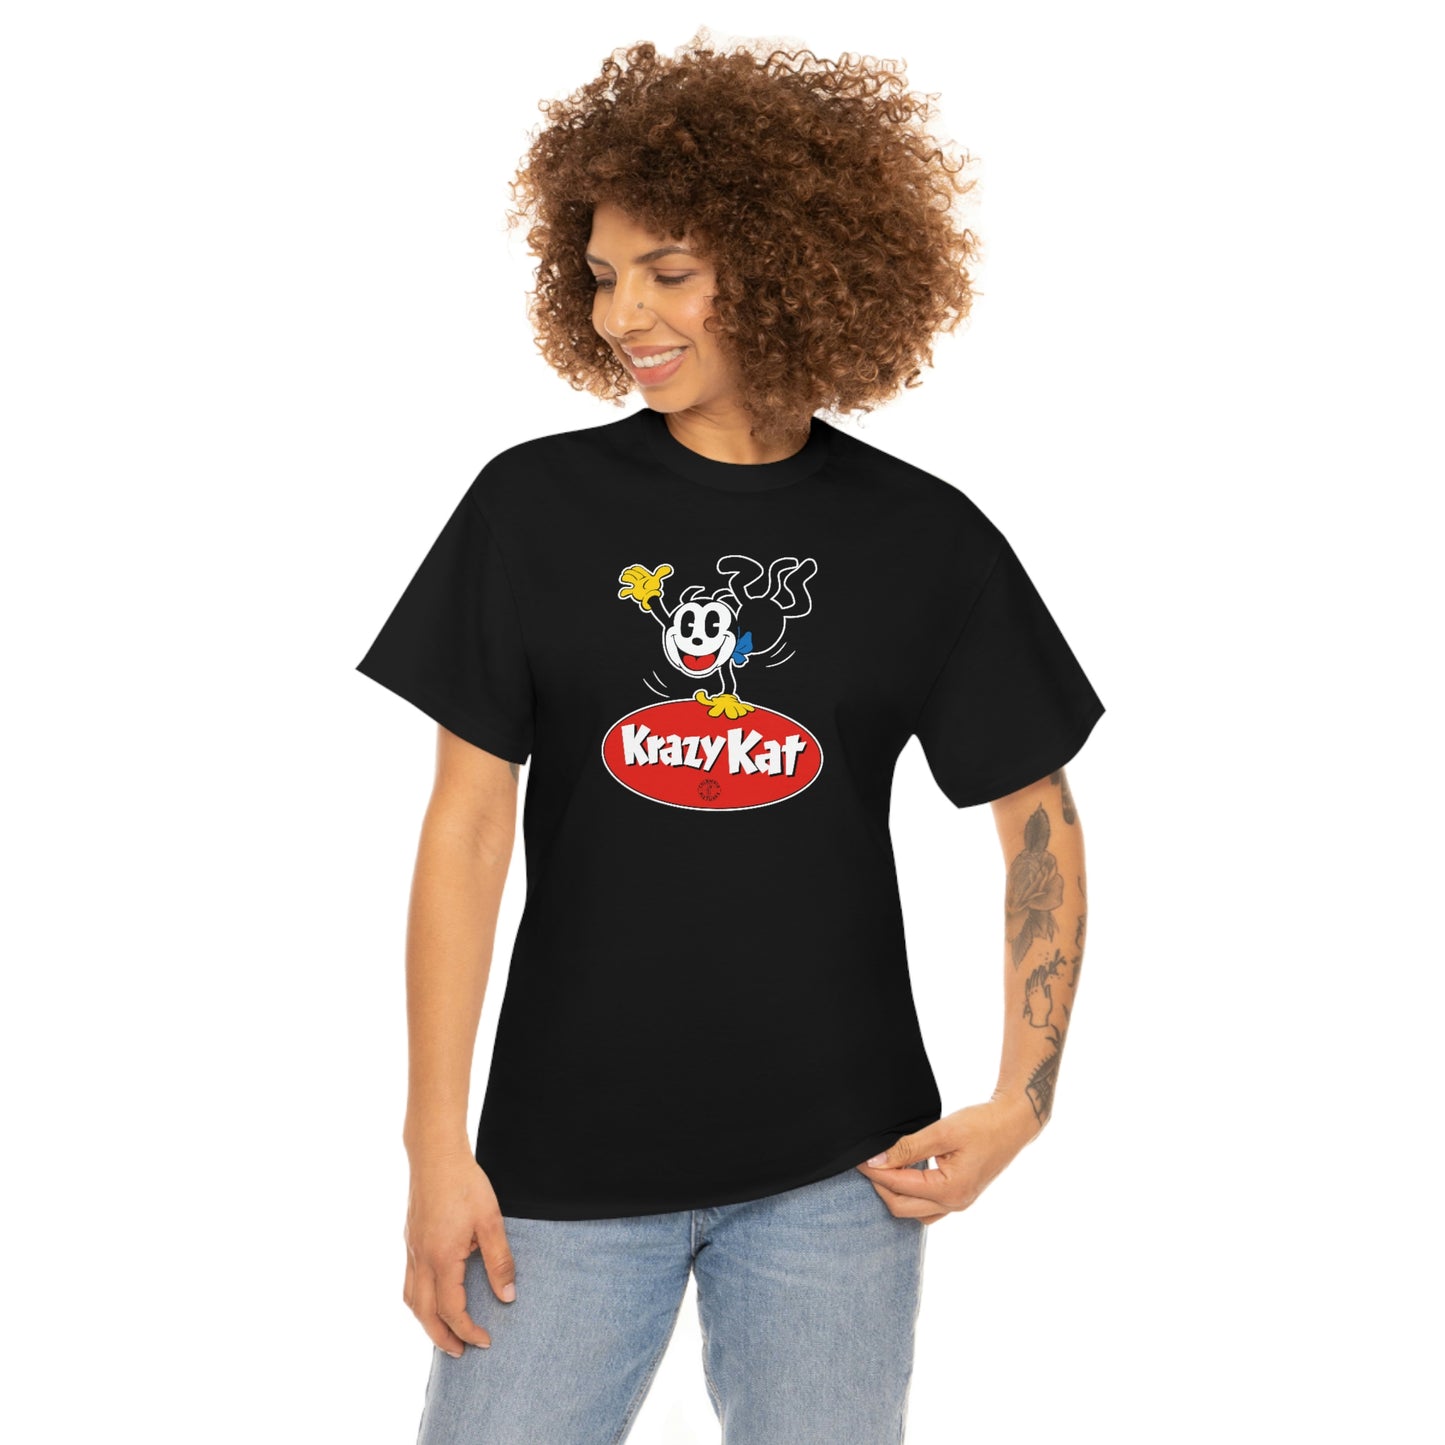 Krazy Kat T-Shirt